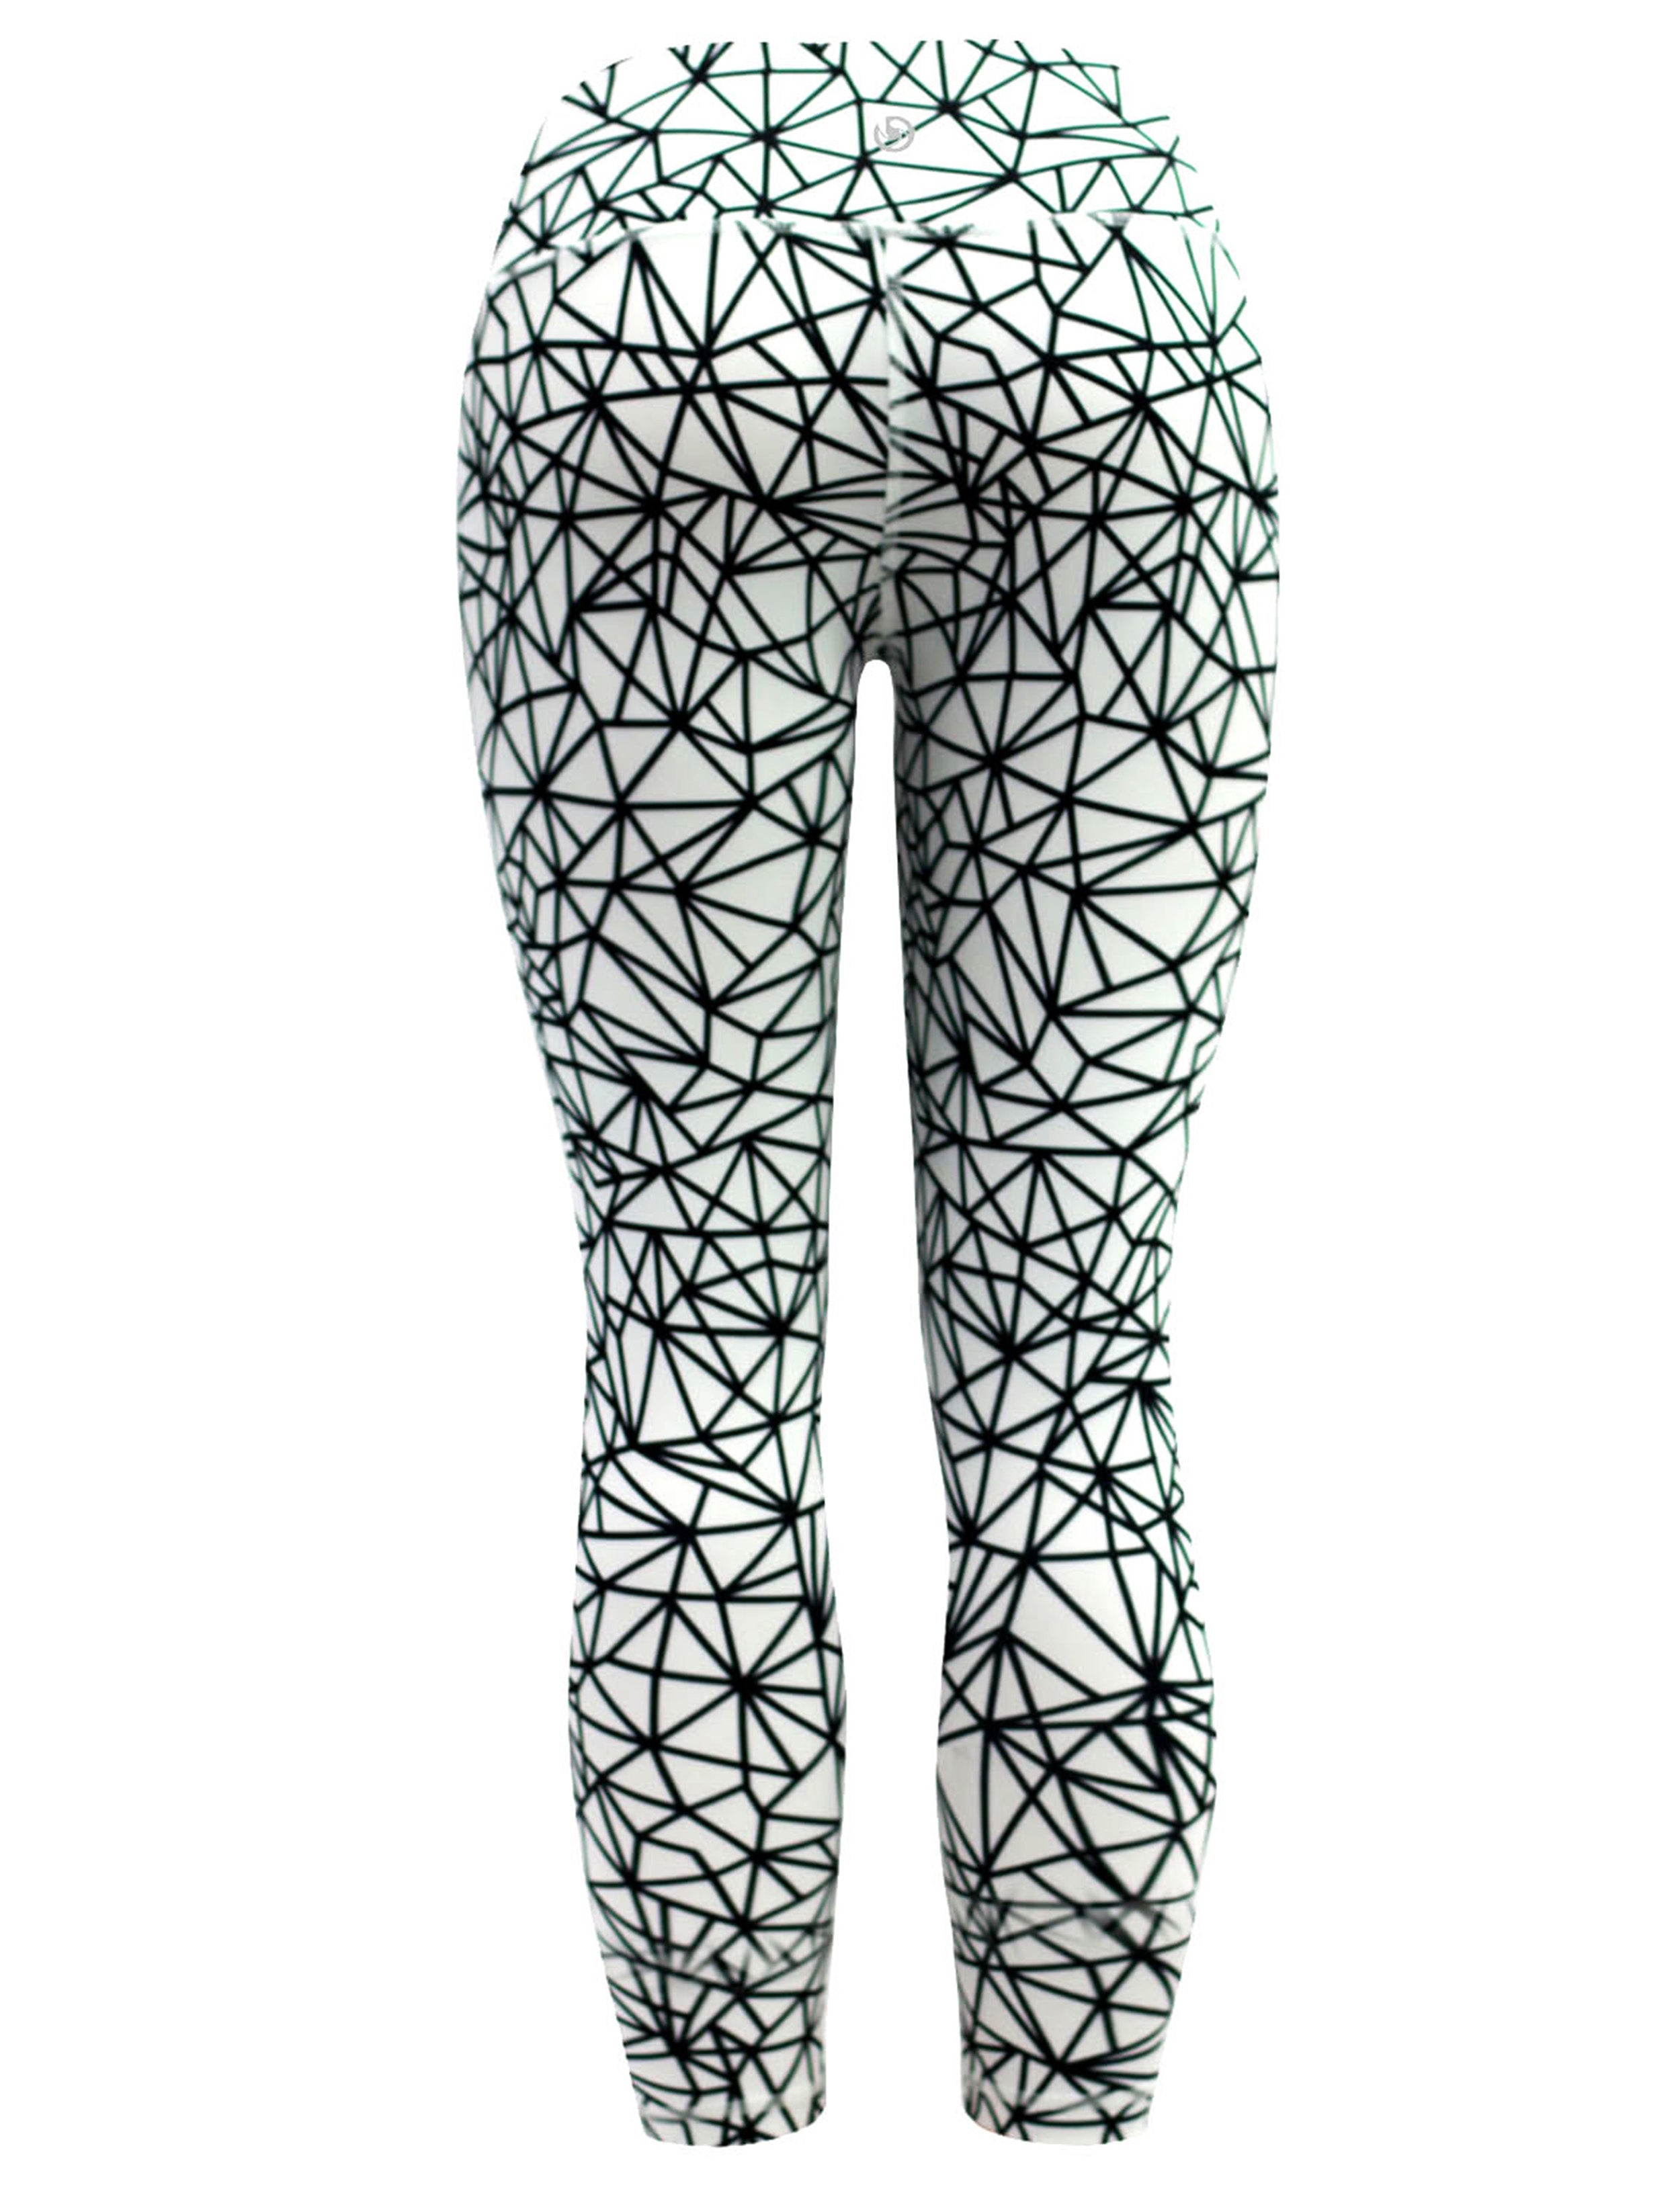 22" Printed Yoga Pants WHITESPIDER